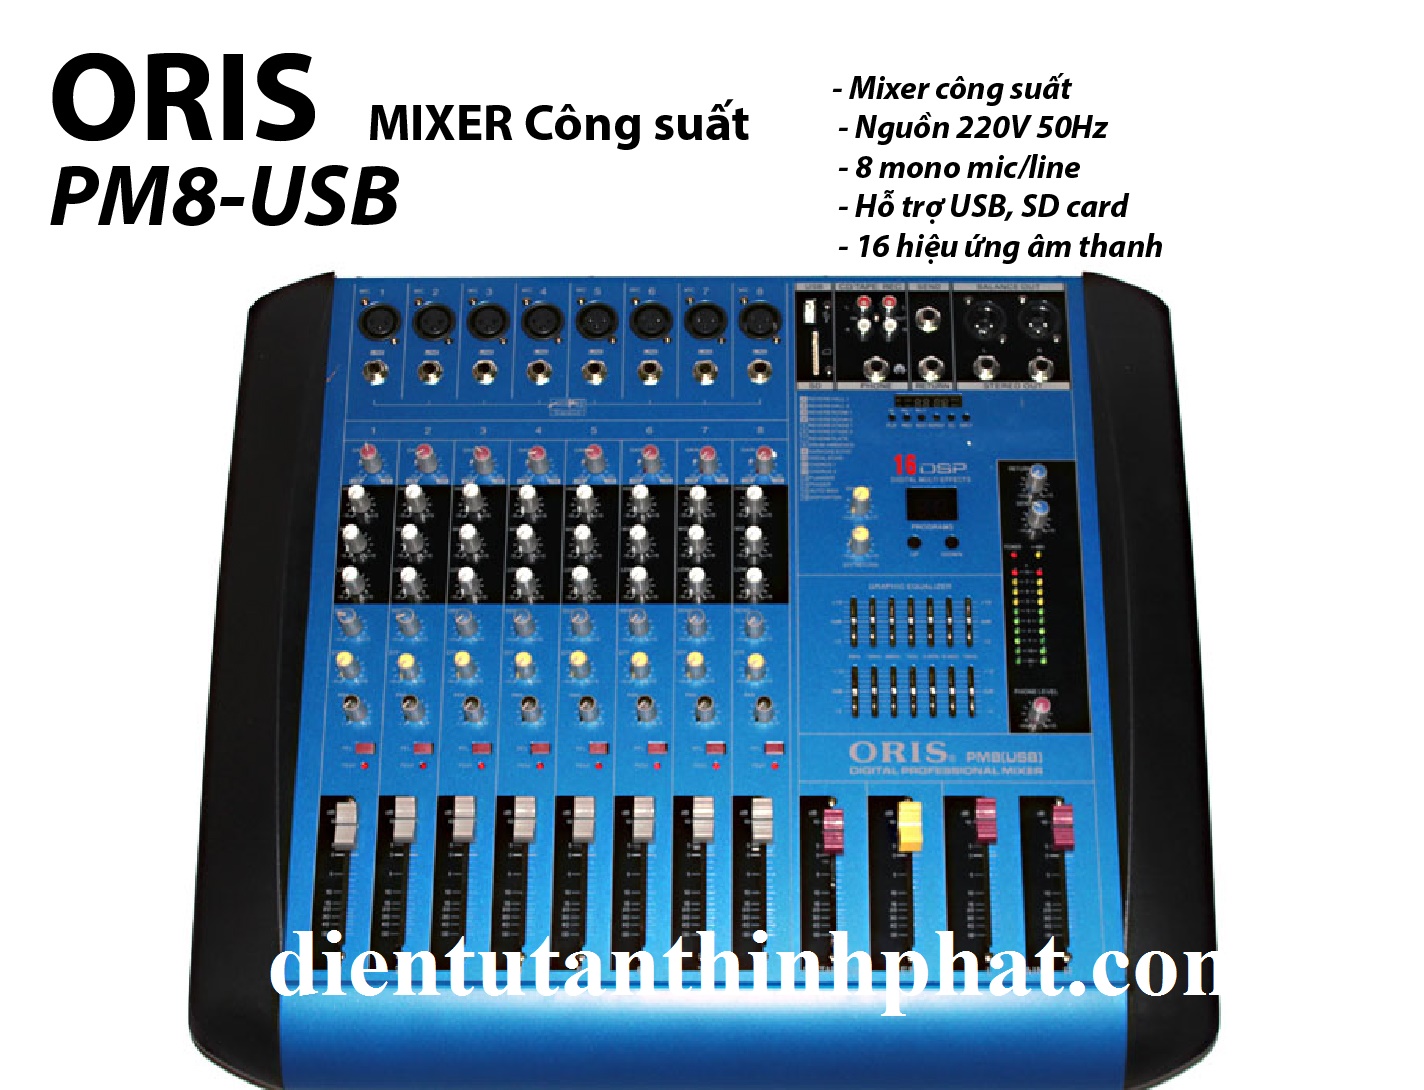 Bàn mixer công suất oris PM8-USB